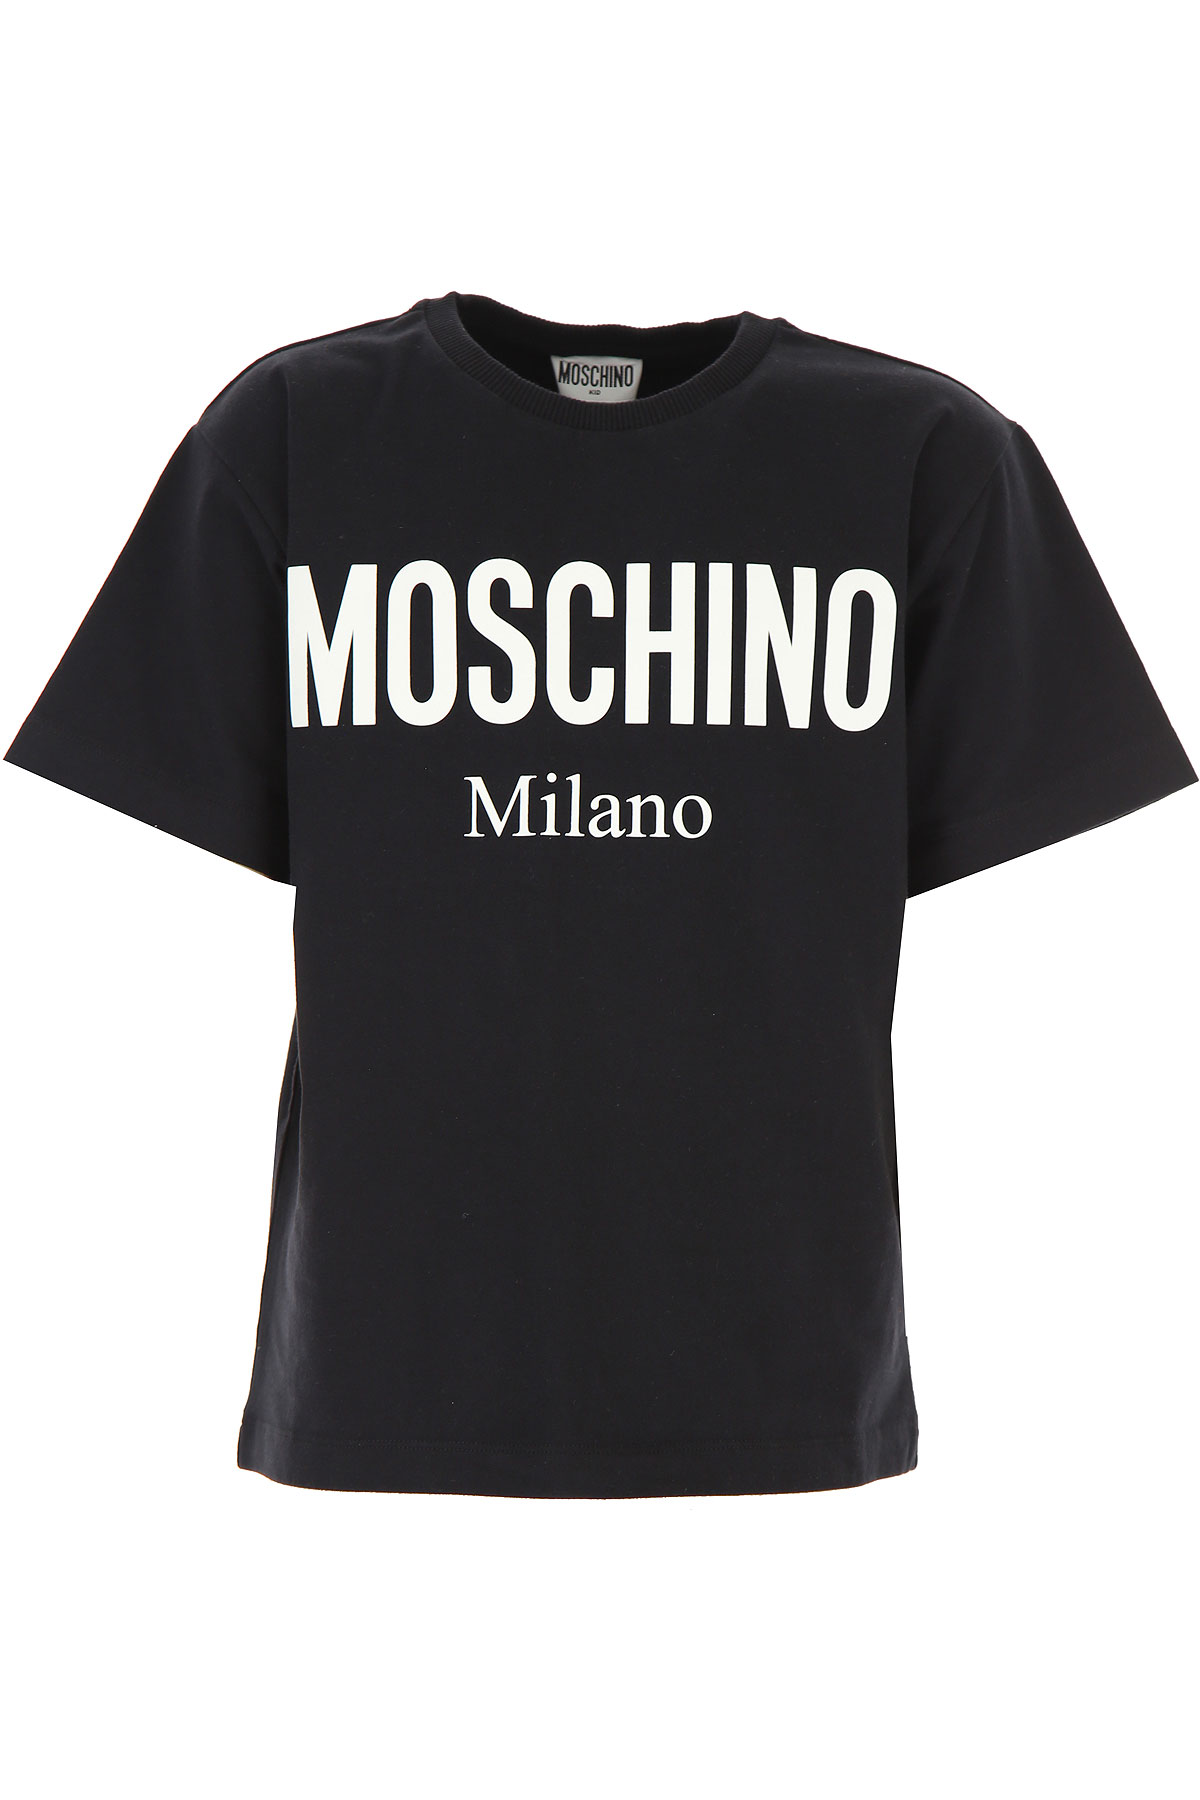 Moschino Kinder T-Shirt für Jungen Günstig im Sale, Schwarz, Baumwolle, 2017, 10Y 12Y 4Y